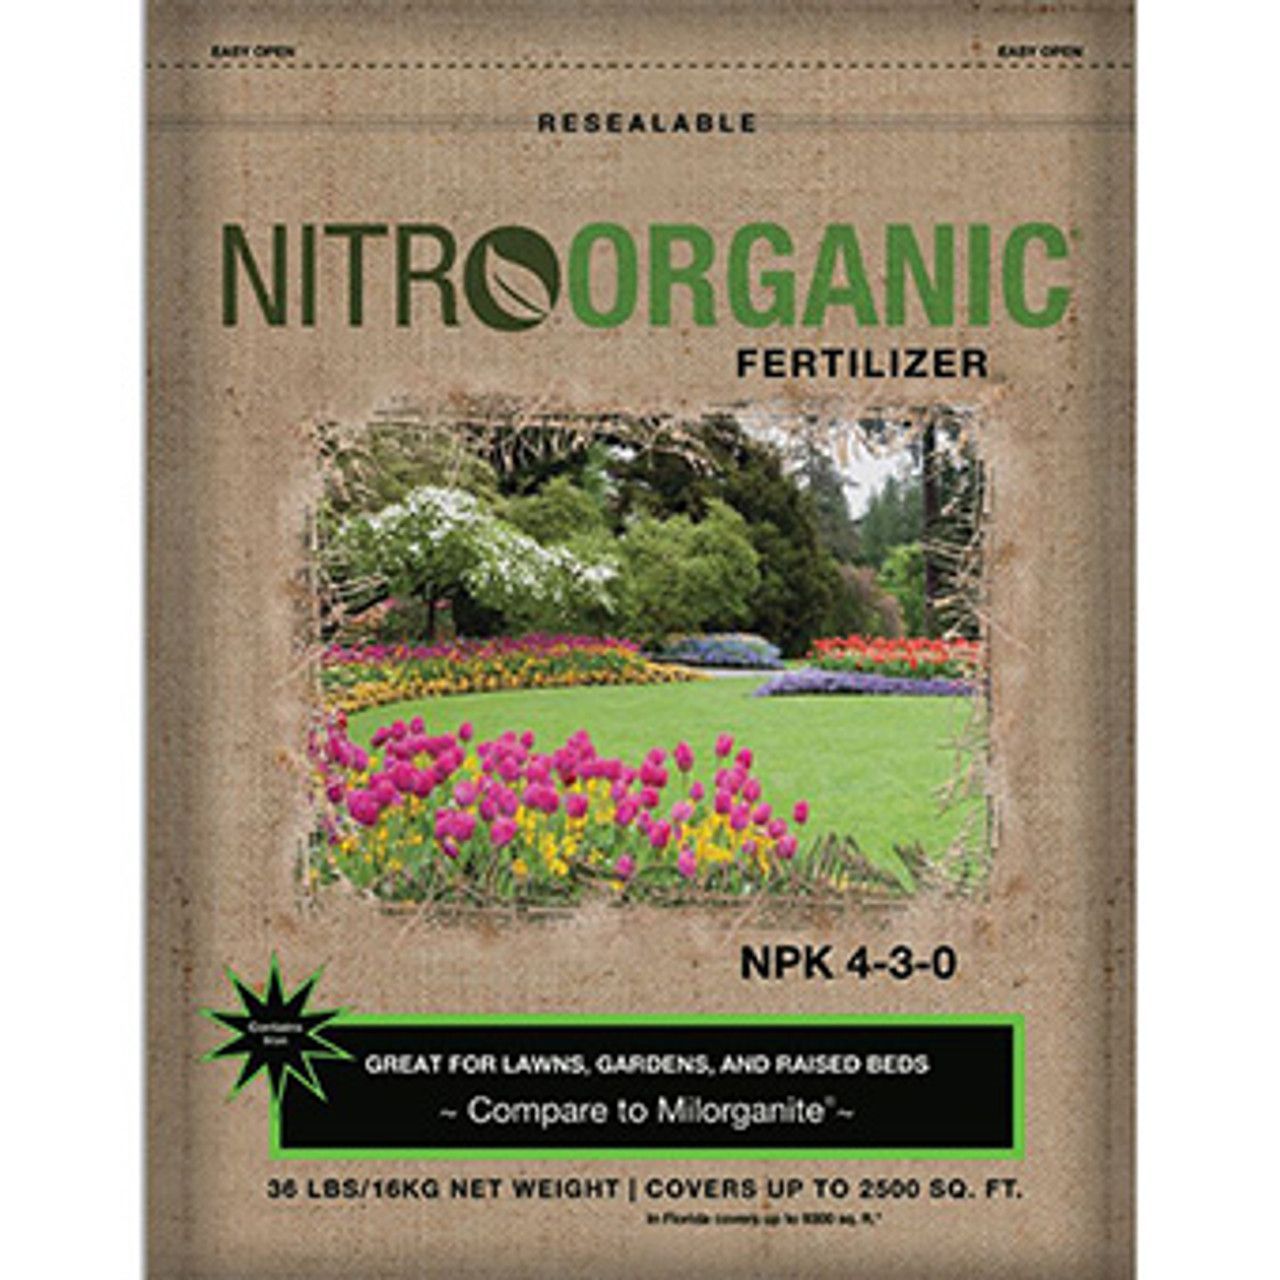 NitroOrganic Fertilizer